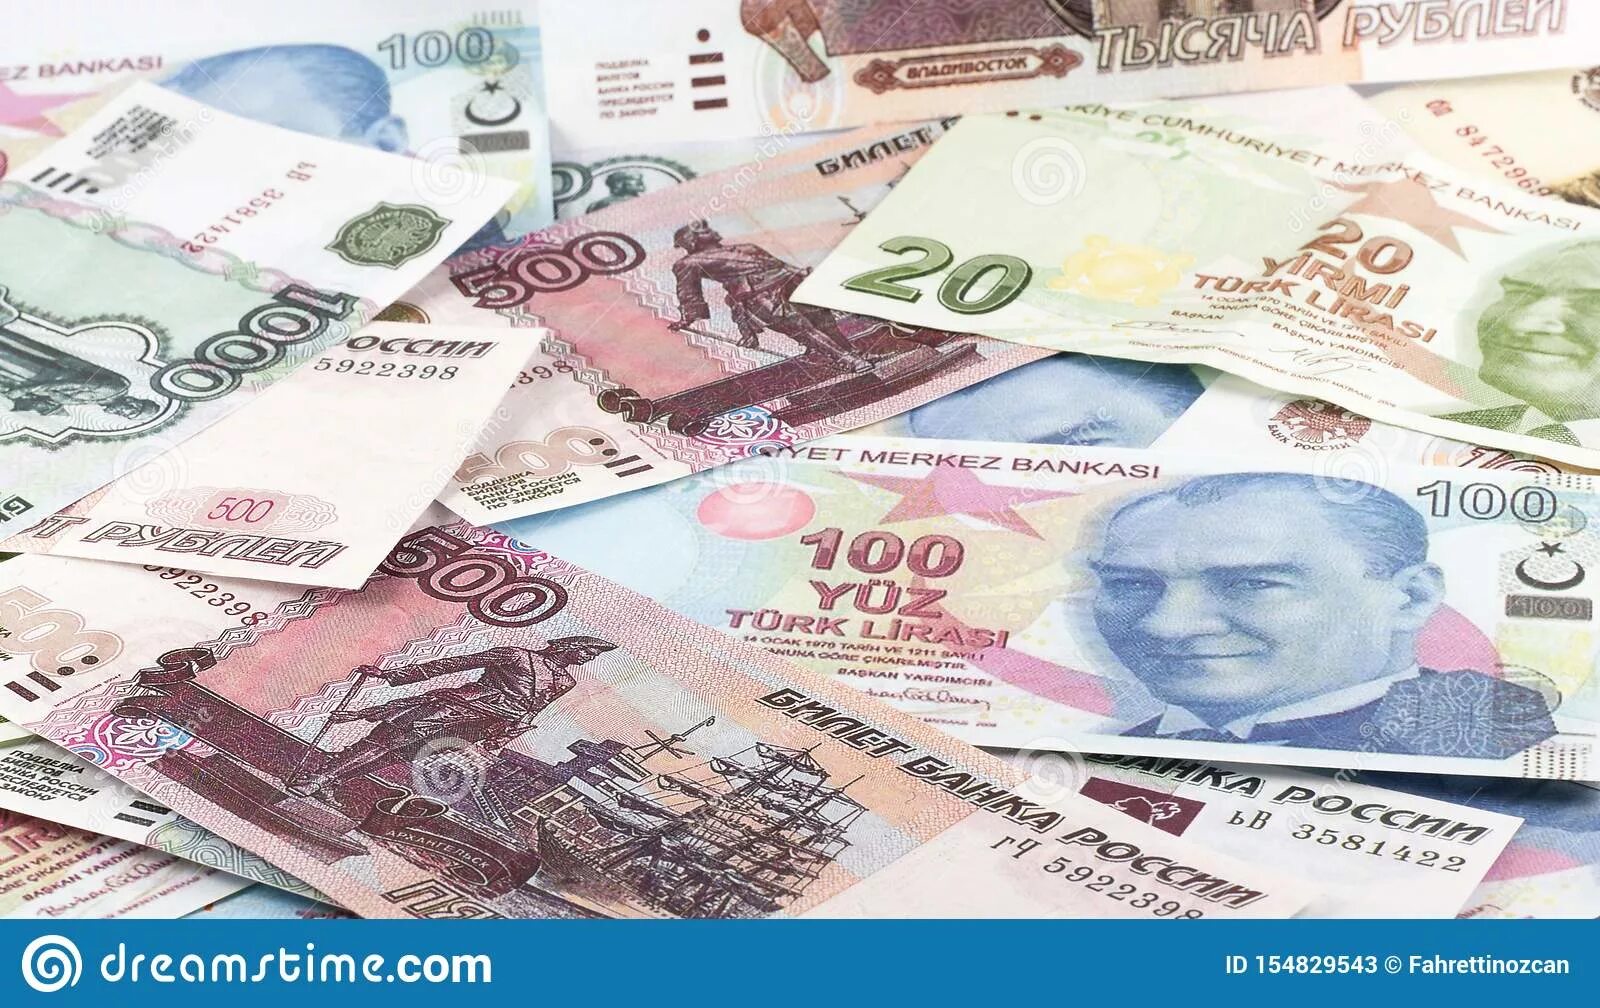 Доллар рубль турция. Валюта Турции. Изображение валюты Турции. Русские валюты.